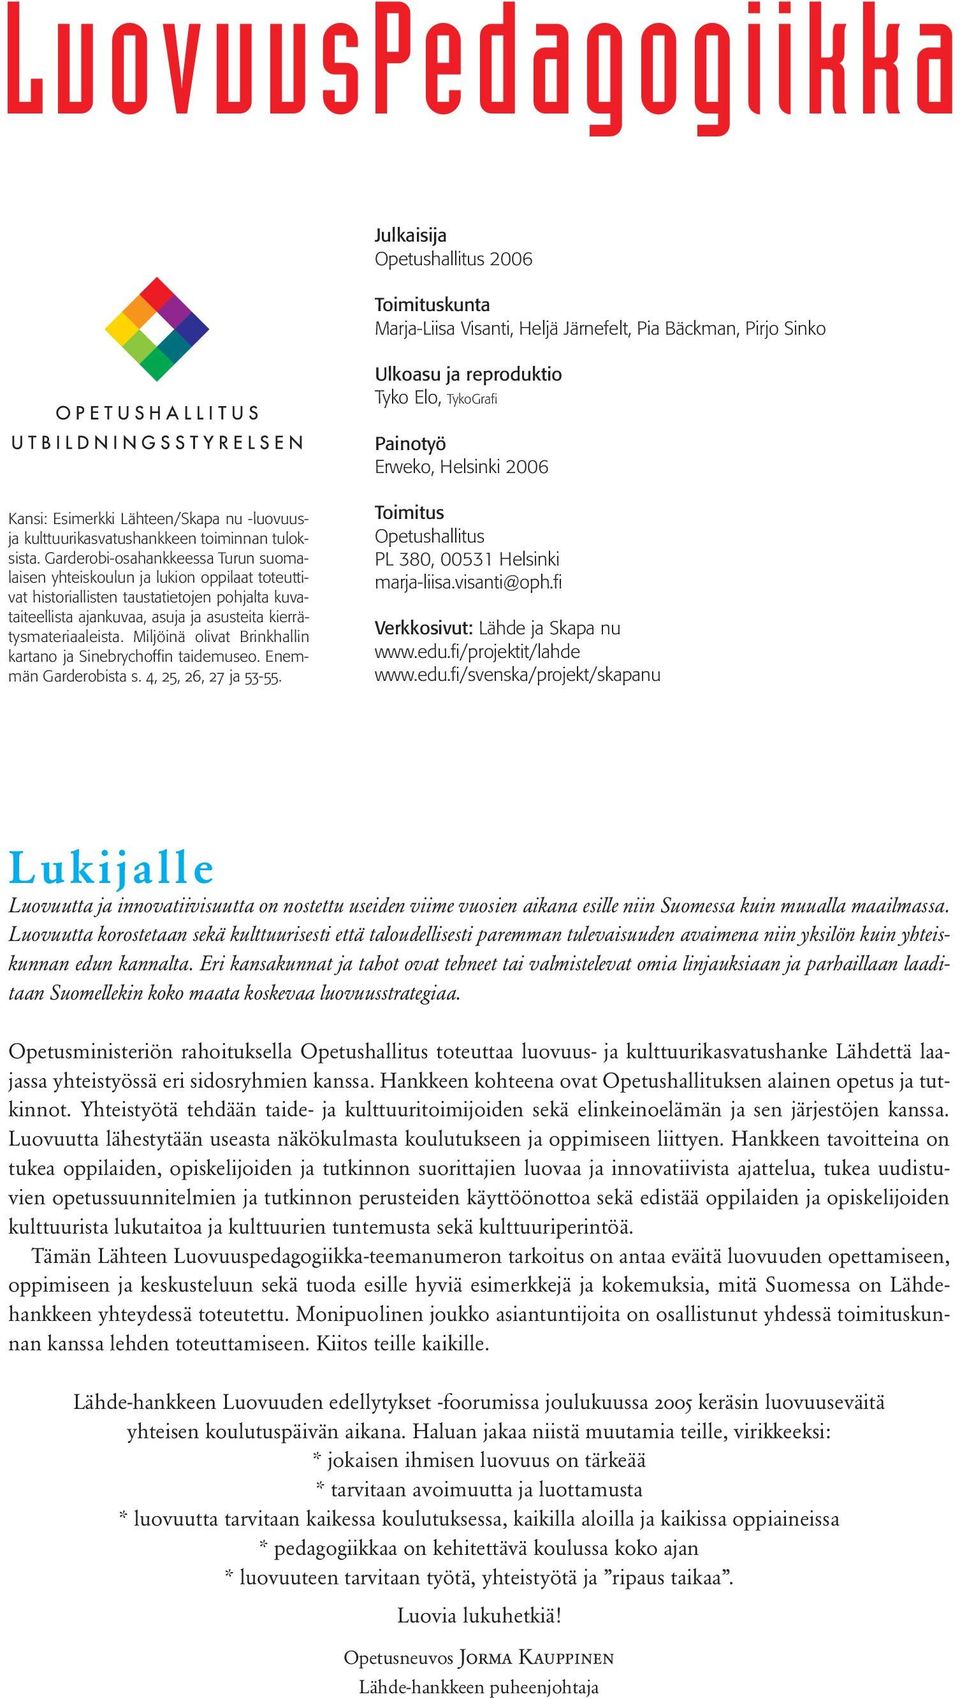 Garderobi-osahankkeessa Turun suomalaisen yhteiskoulun ja lukion oppilaat toteuttivat historiallisten taustatietojen pohjalta kuvataiteellista ajankuvaa, asuja ja asusteita kierrätysmateriaaleista.